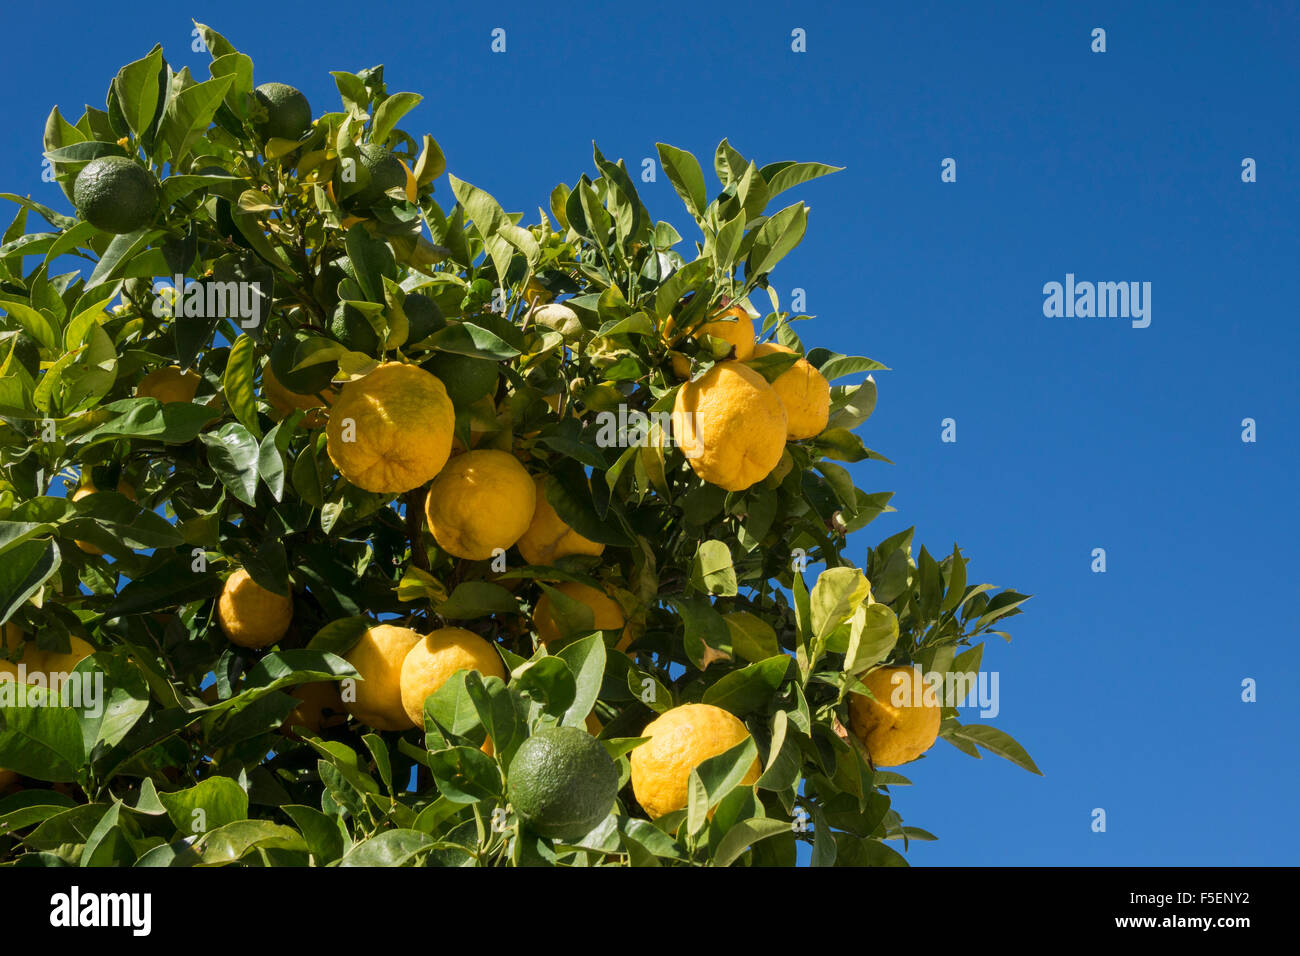 Hybrid albero da frutto la crescita di entrambi le arance e i limoni sullo stesso ramo Foto Stock